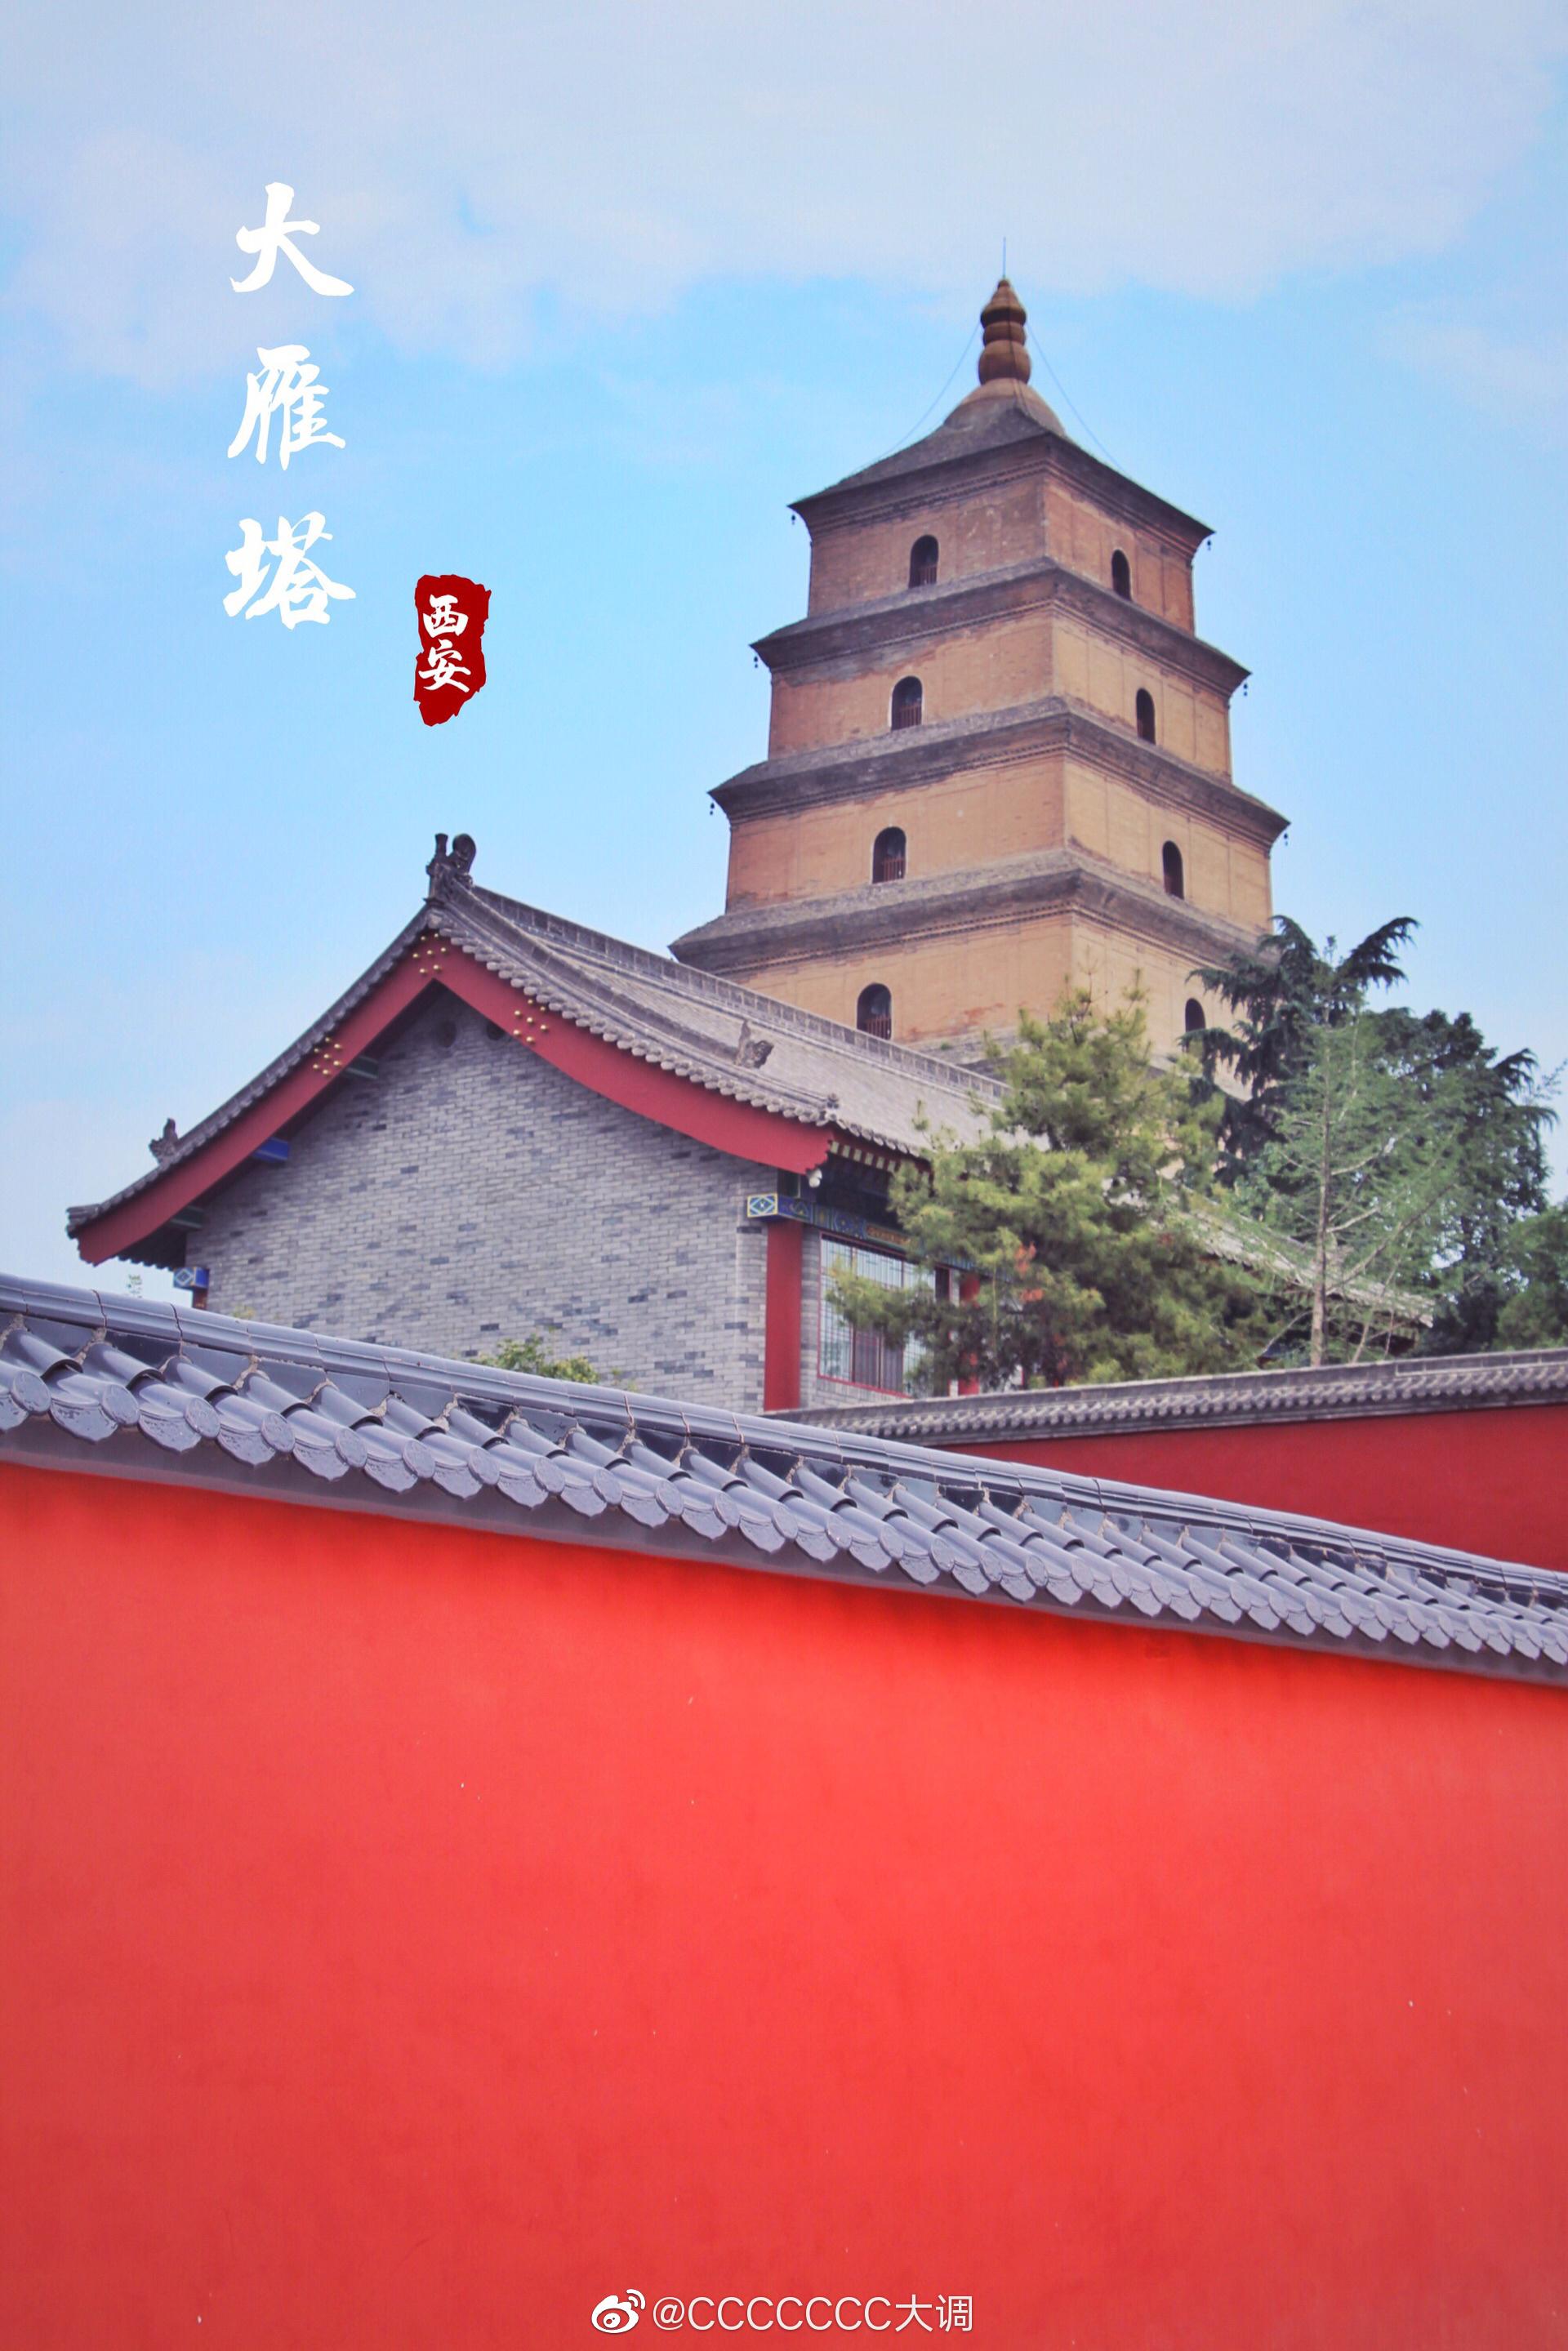 【携程攻略】西安大雁塔景点,大雁塔位于陕西省西安市的的大慈恩寺内，又名“慈恩寺塔“，建于唐朝…